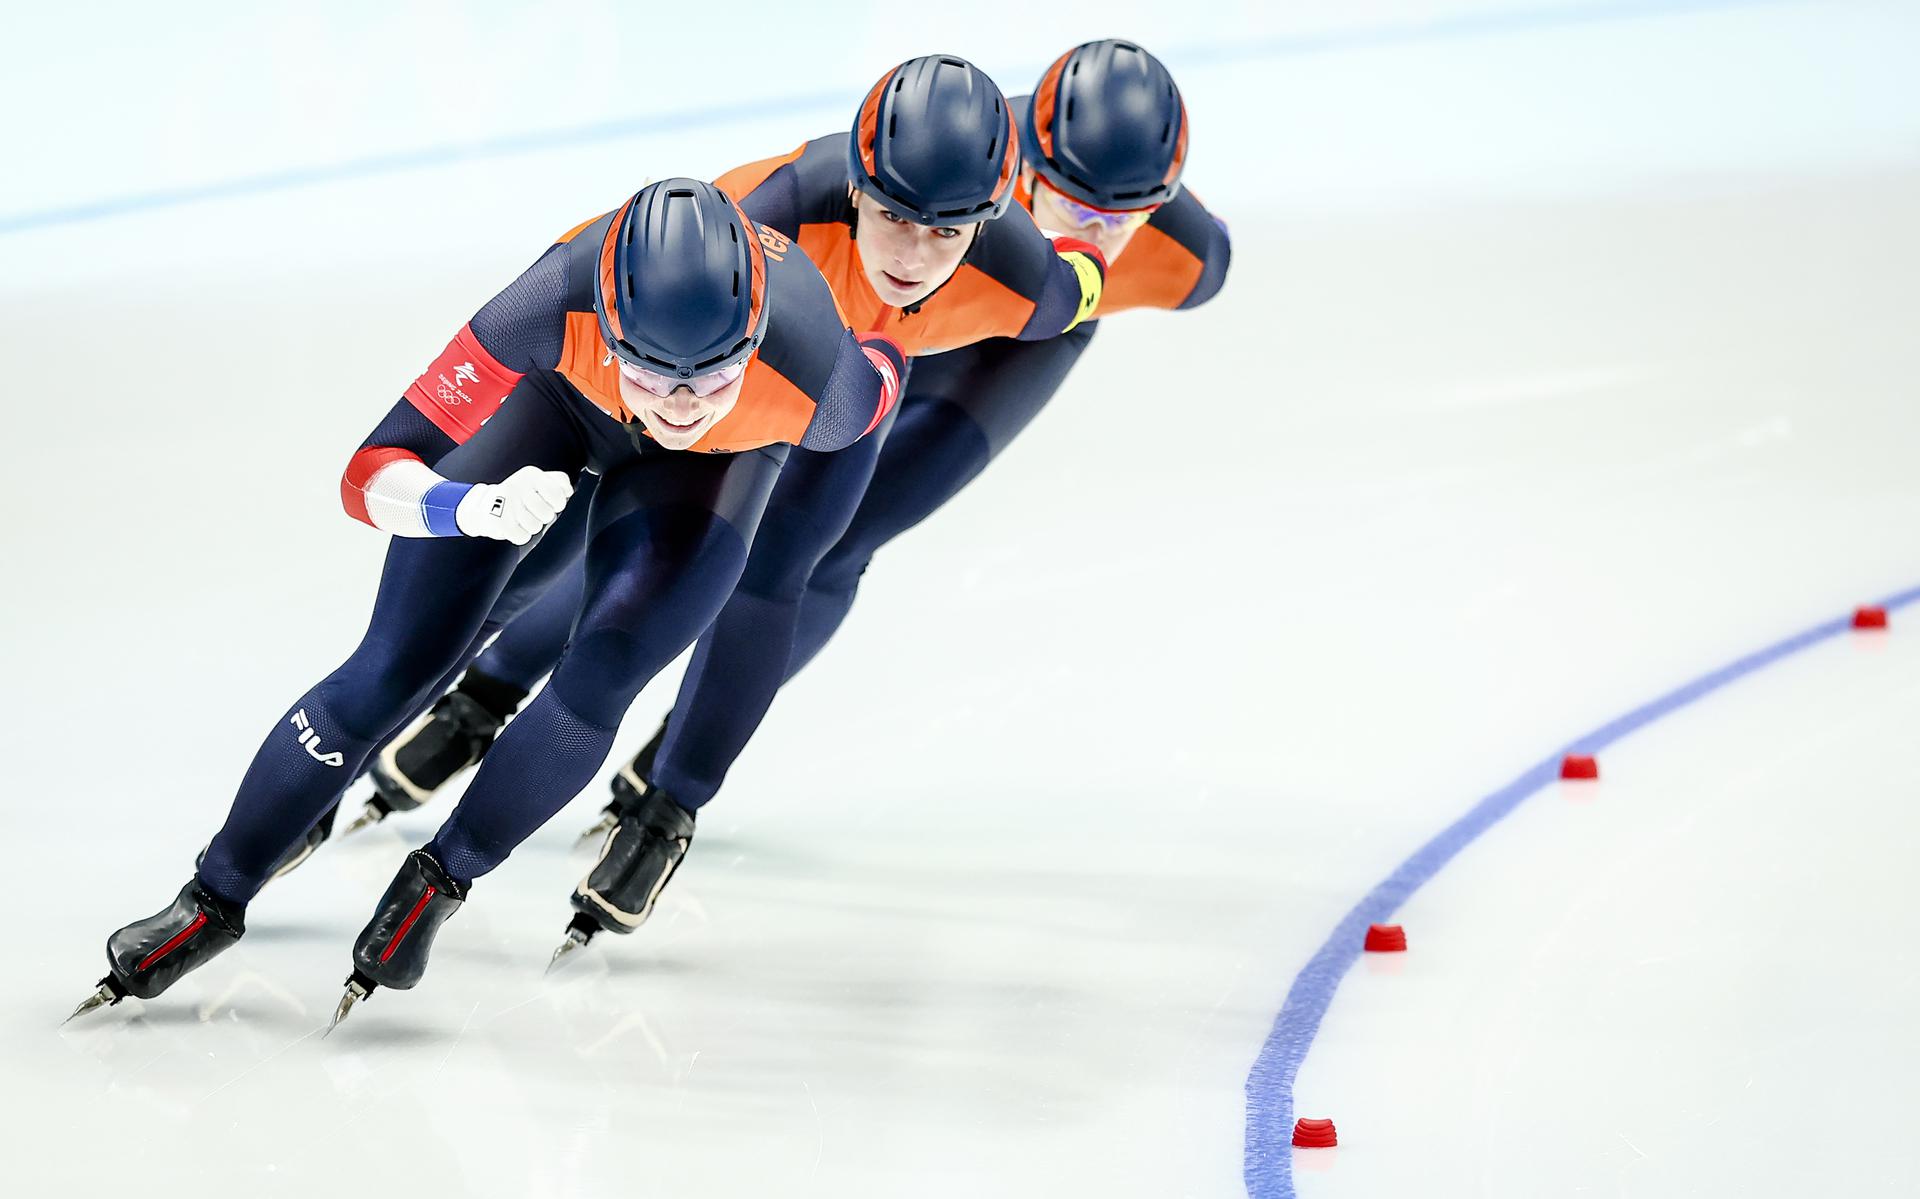 Nederlandse schaatssters Marijke Groenewoud, Irene Schouten en Ireen Wüst in actie tijdens de finale B van de ploegenachtervolging.